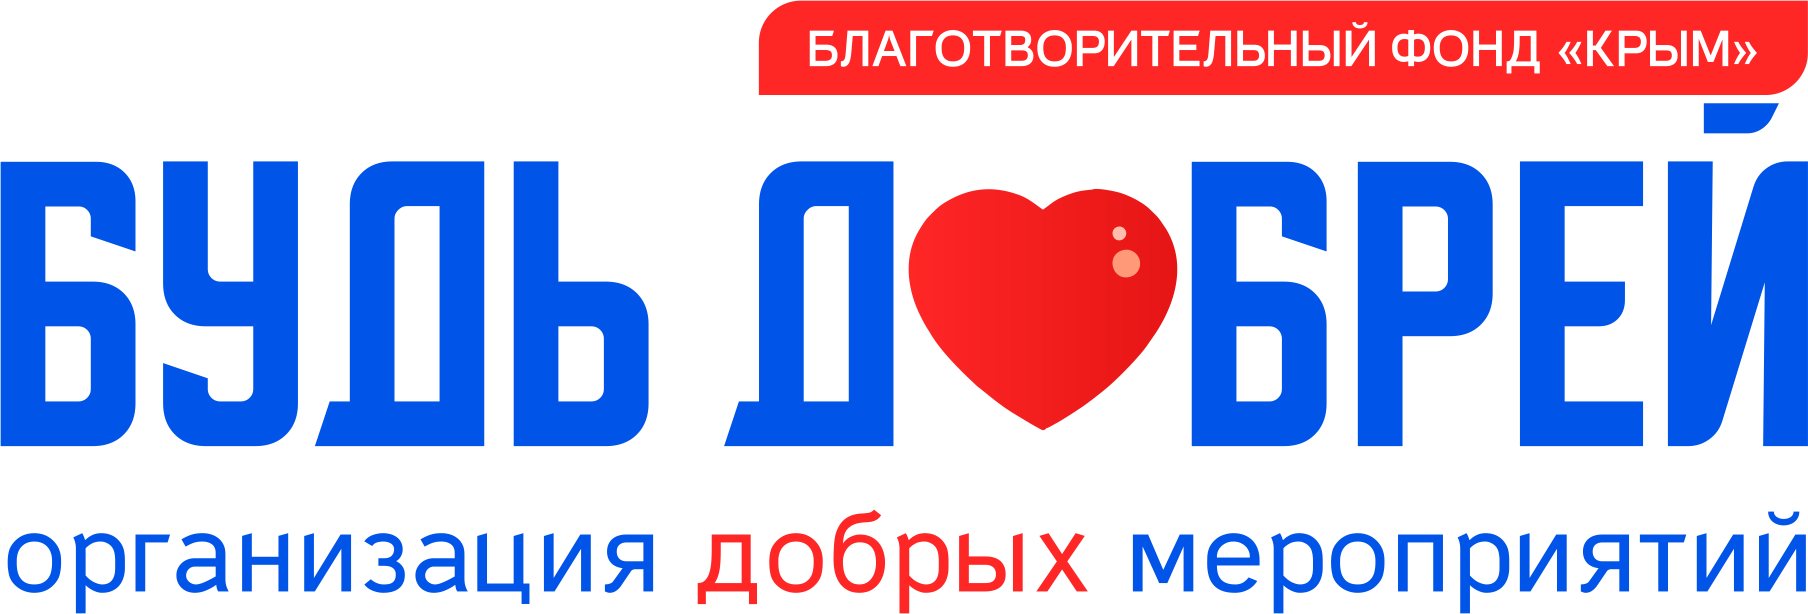 logo_dobriy